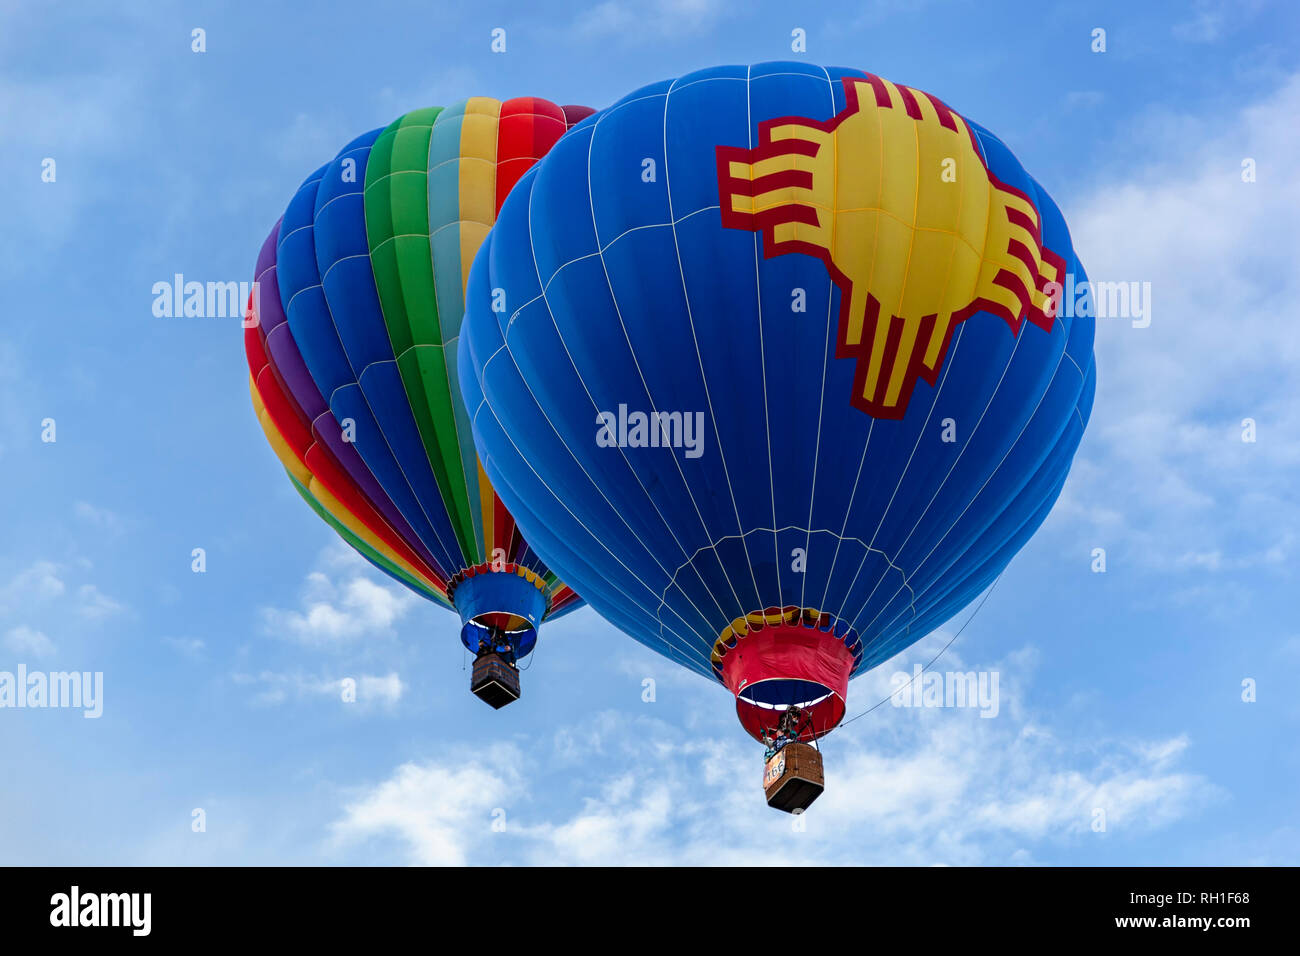 Hot air balloons (foreground with Zia symbol), Albuquerque International Balloon Fiesta, Albuquerque, New Mexico USA Stock Photo